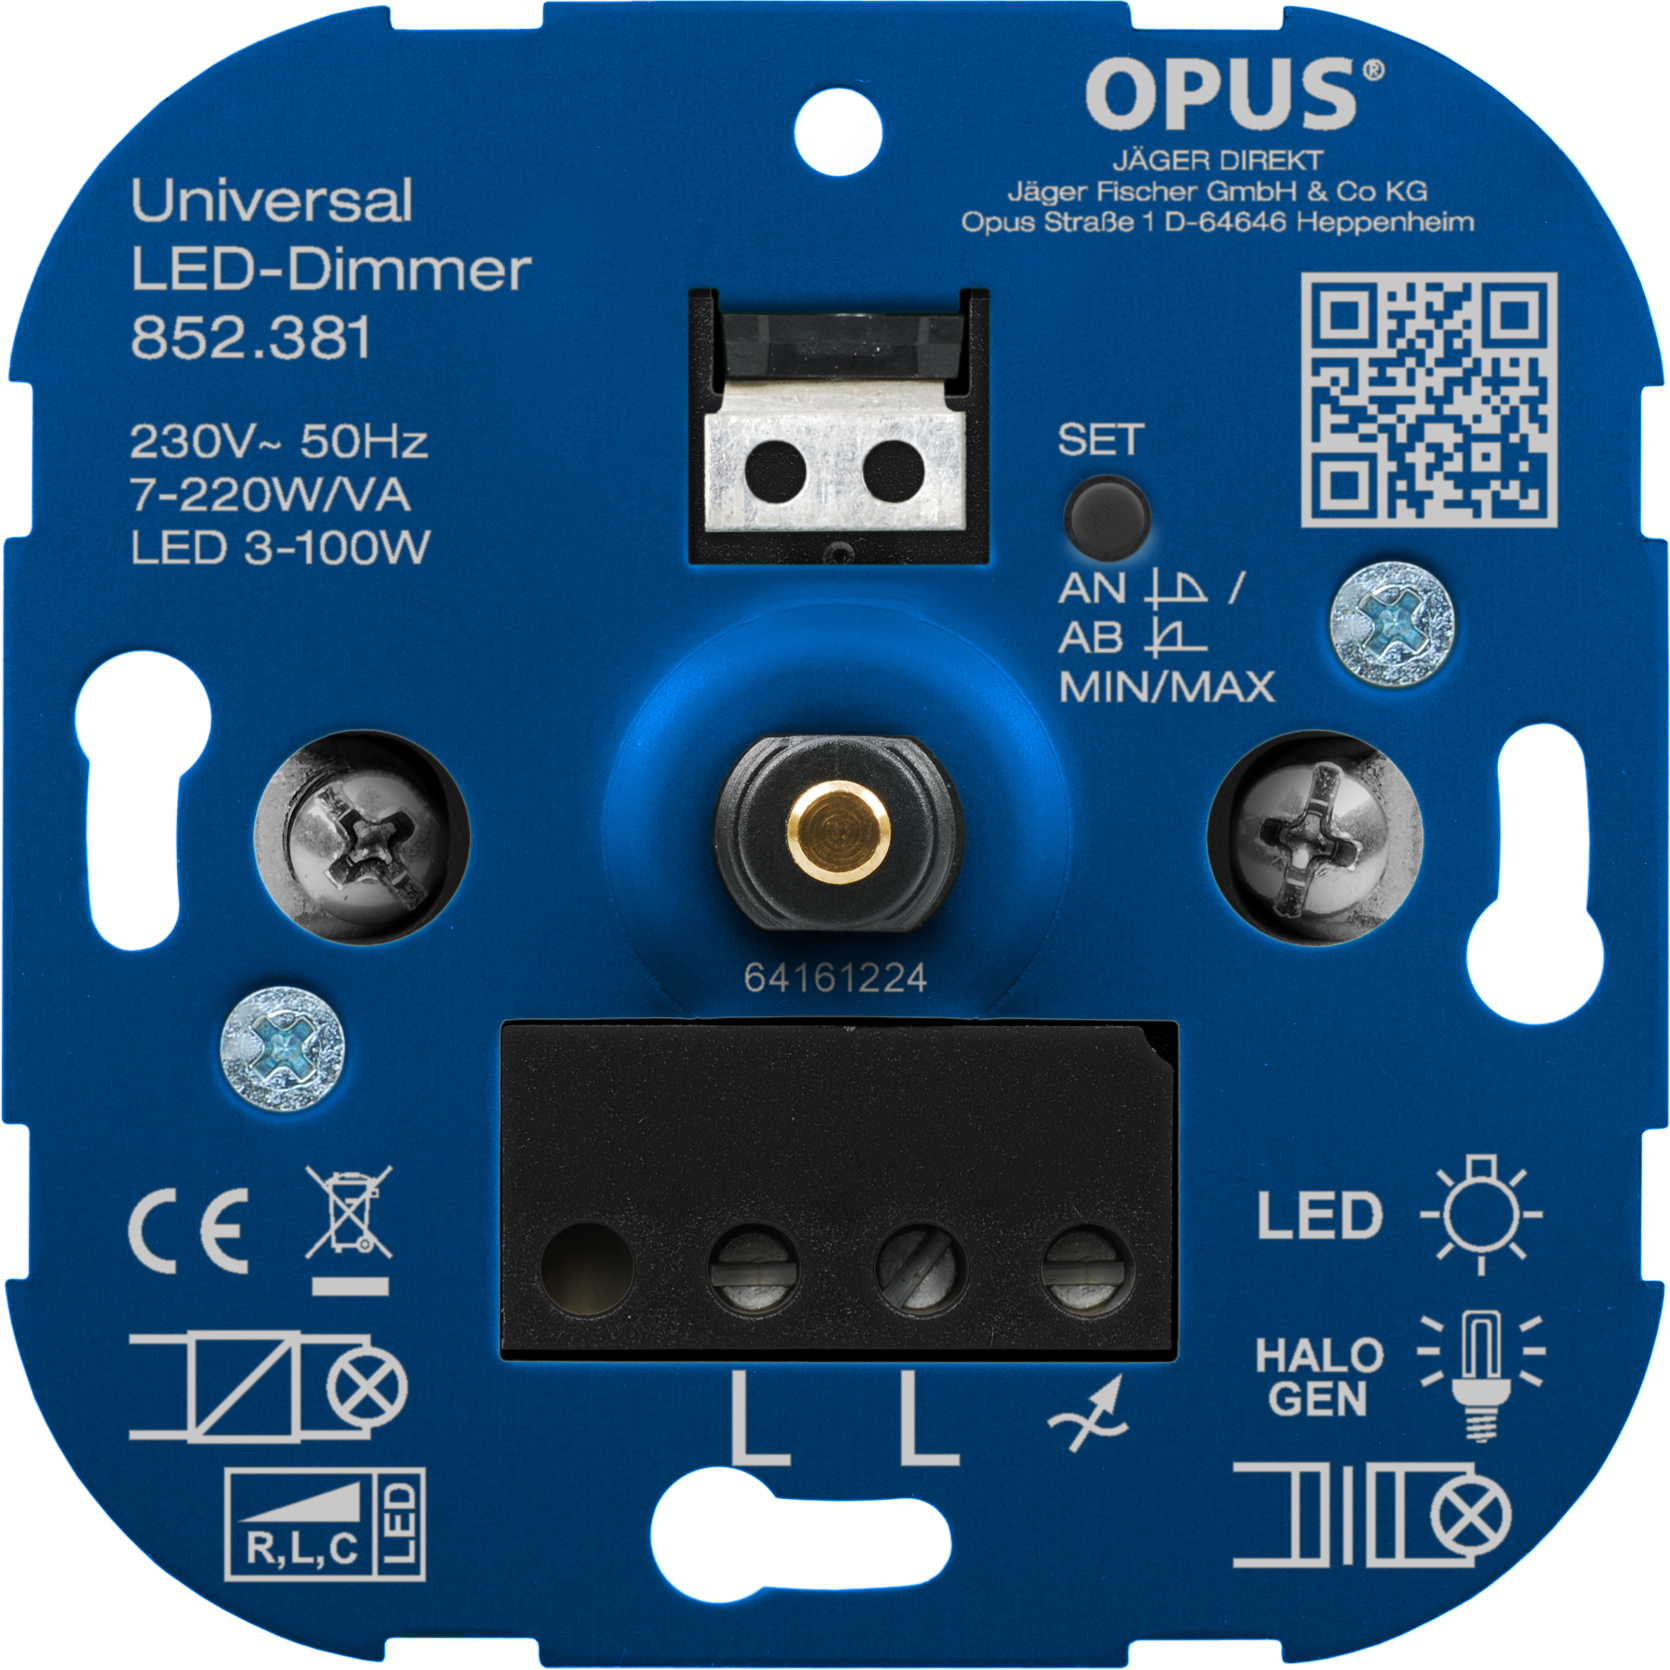 OPUS universeel-dimmer voor LED-, gloei- en halogeenlampen Universeel 7 - 220 VA / LED 3 - 100 W